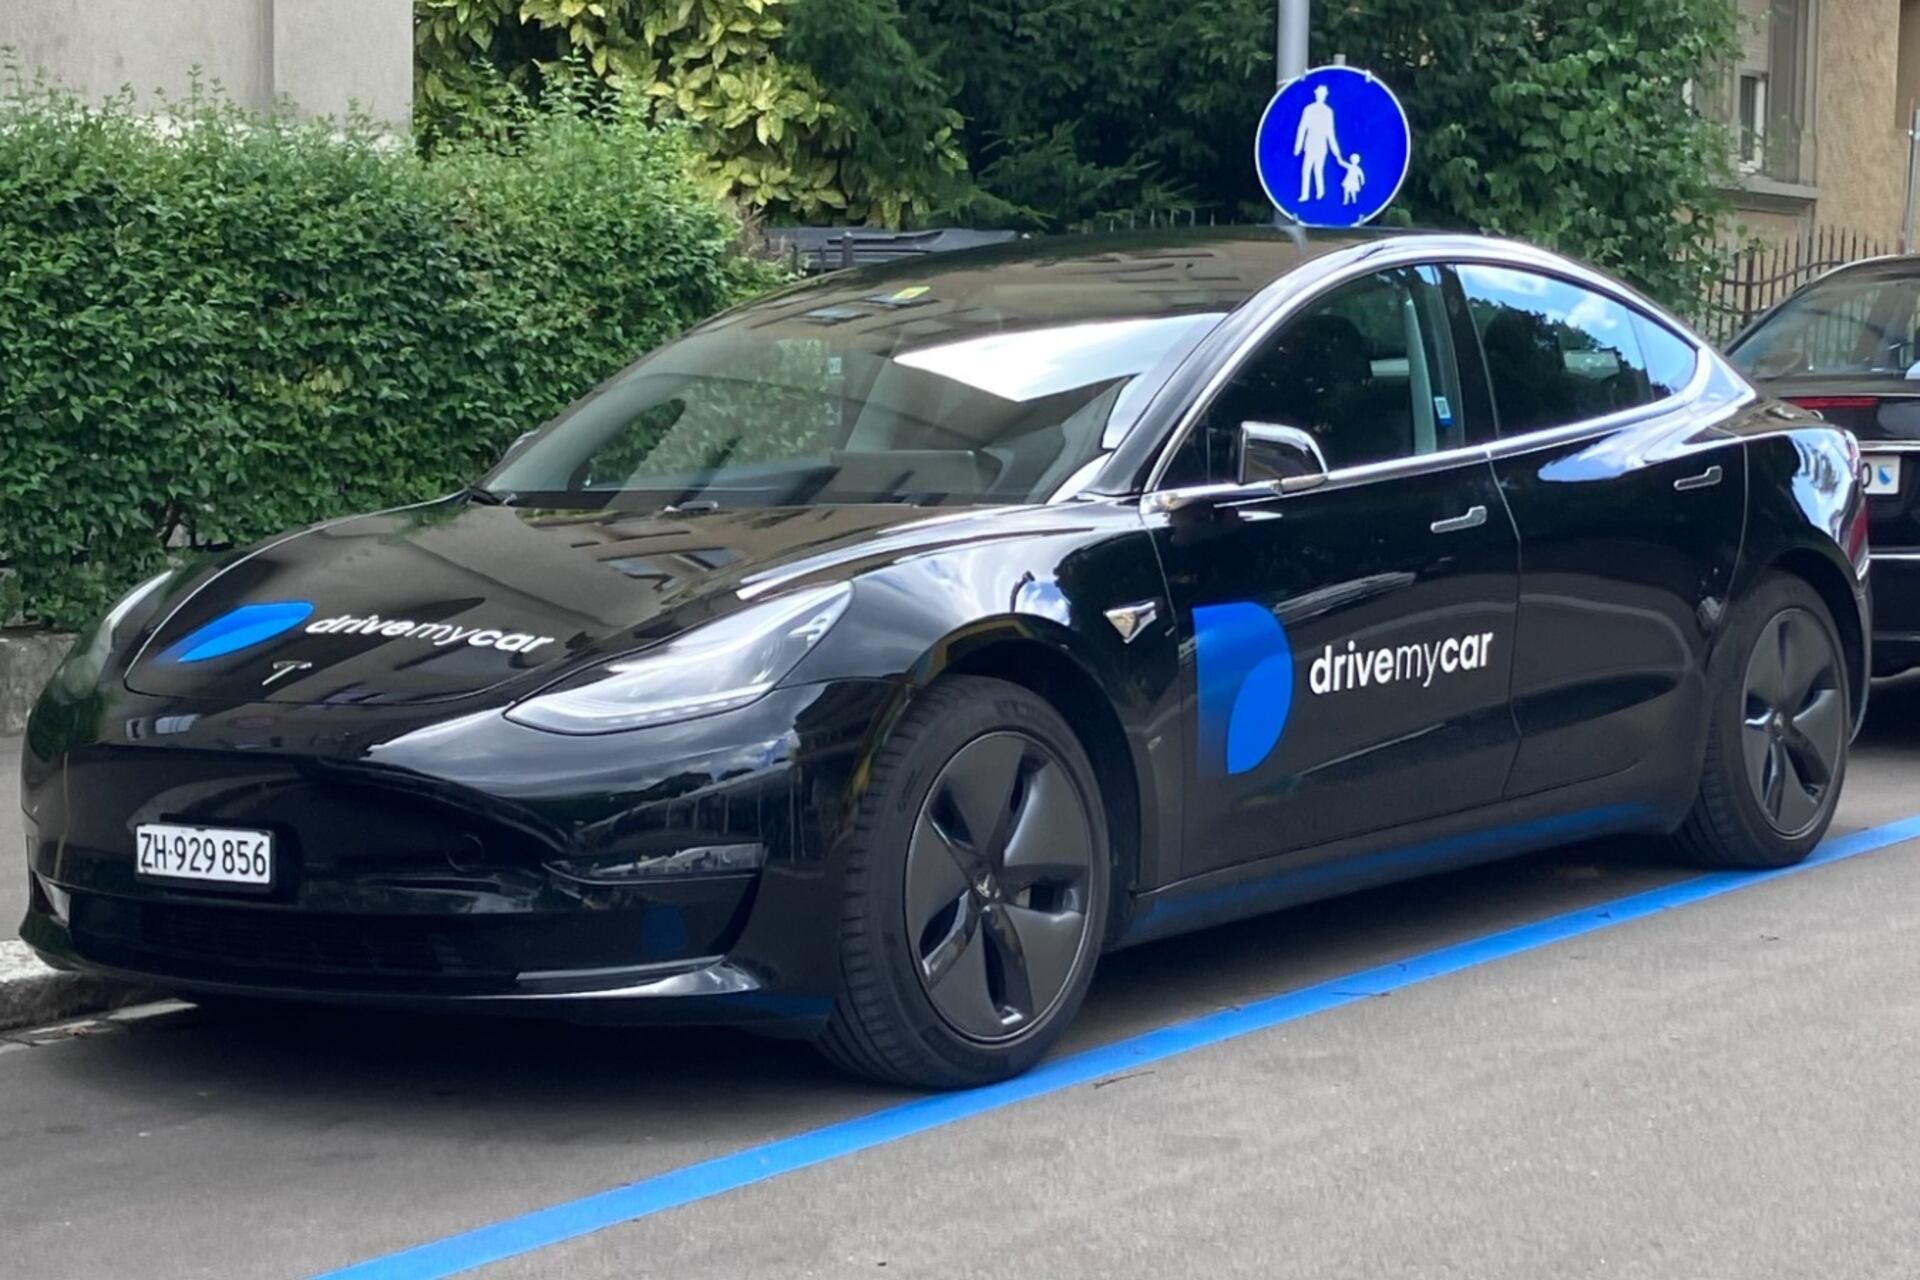 Drivemycar: la Tesla di un utente zurighese